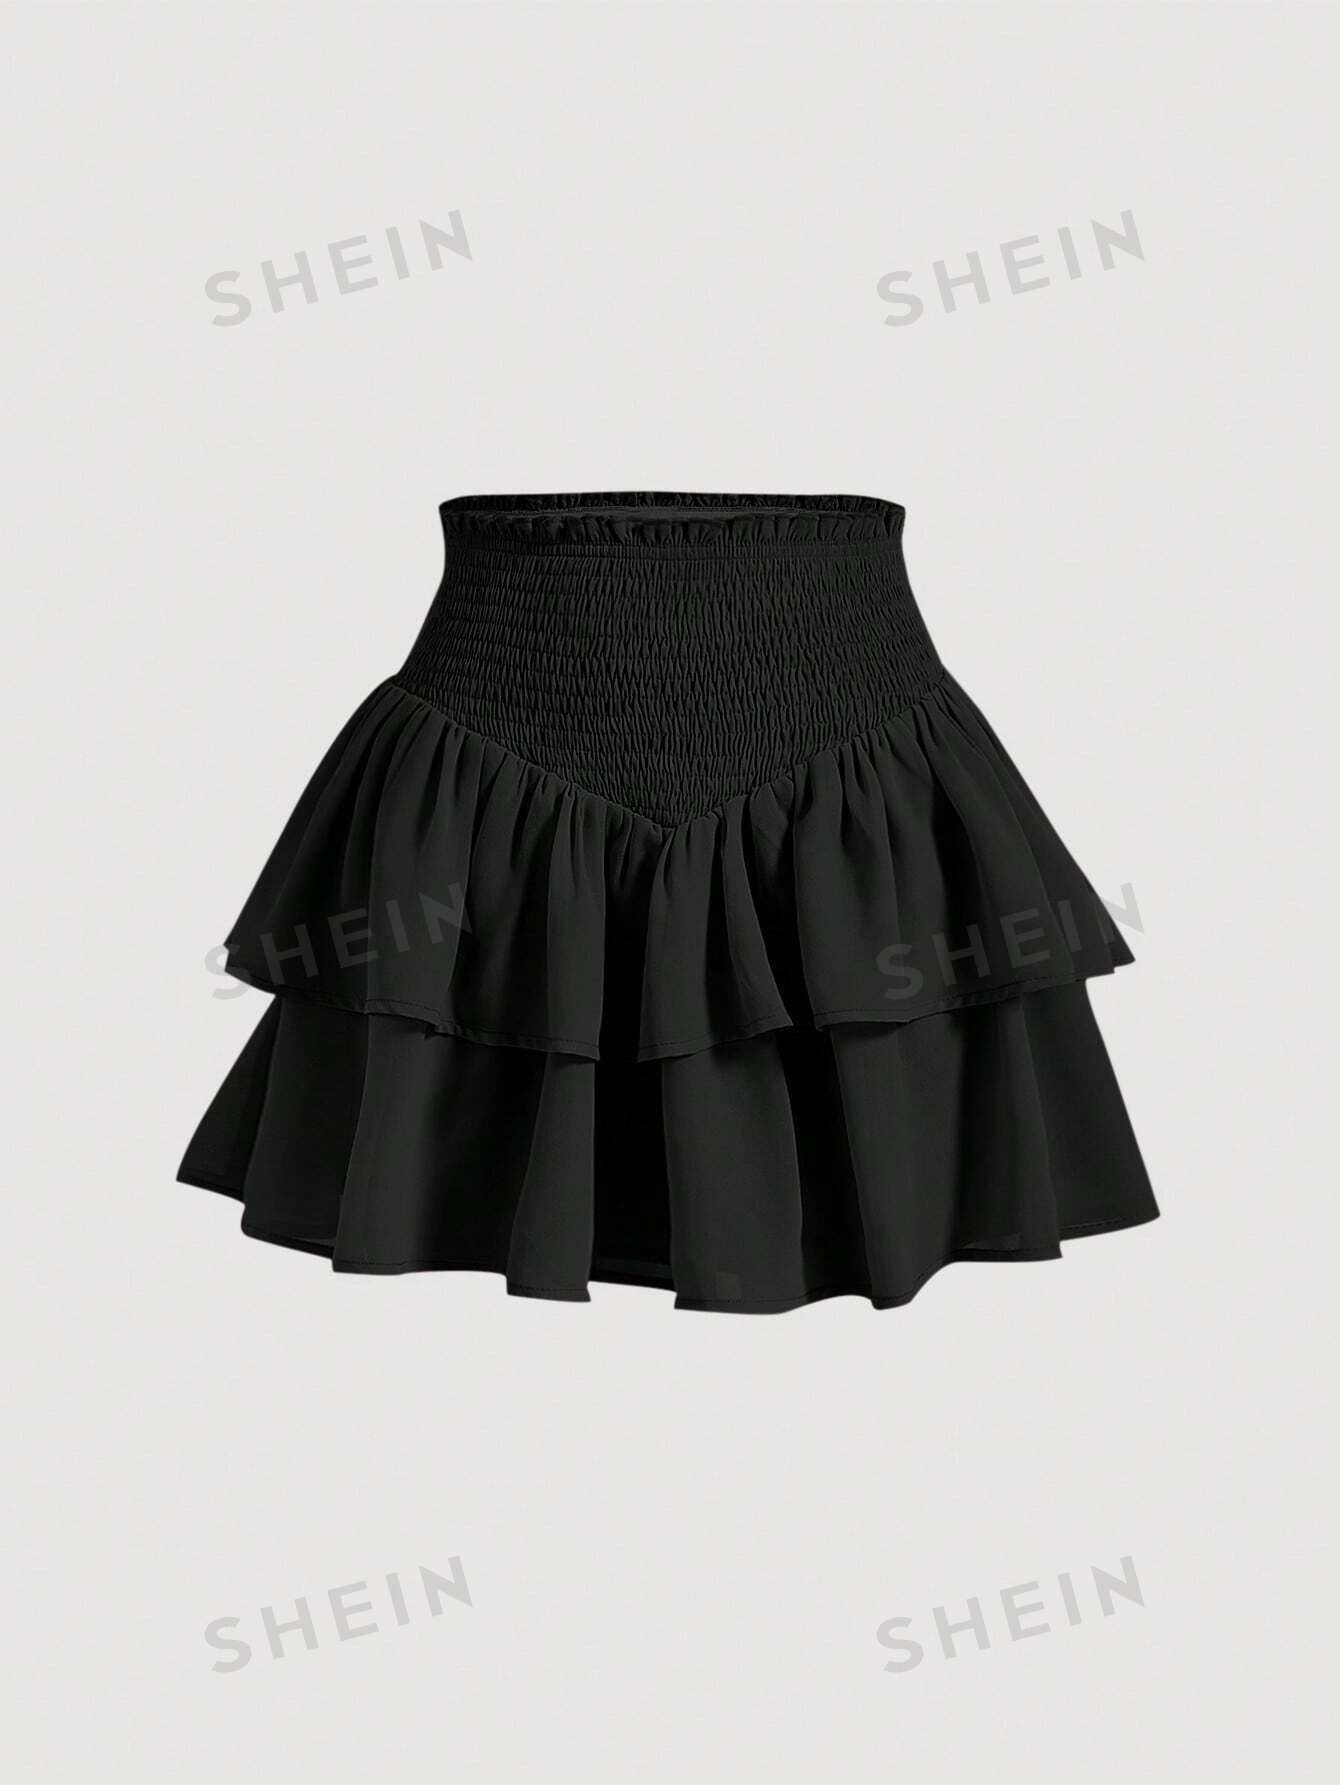 SHEIN MOD SHEIN MOD женская двухслойная мини-юбка с асимметричным подолом и рюшами и присборенной талией, черный юбка в стиле харадзюку с завышенной талией летняя повседневная готическая юбка трапеция с асимметричным подолом новая модная одежда для р